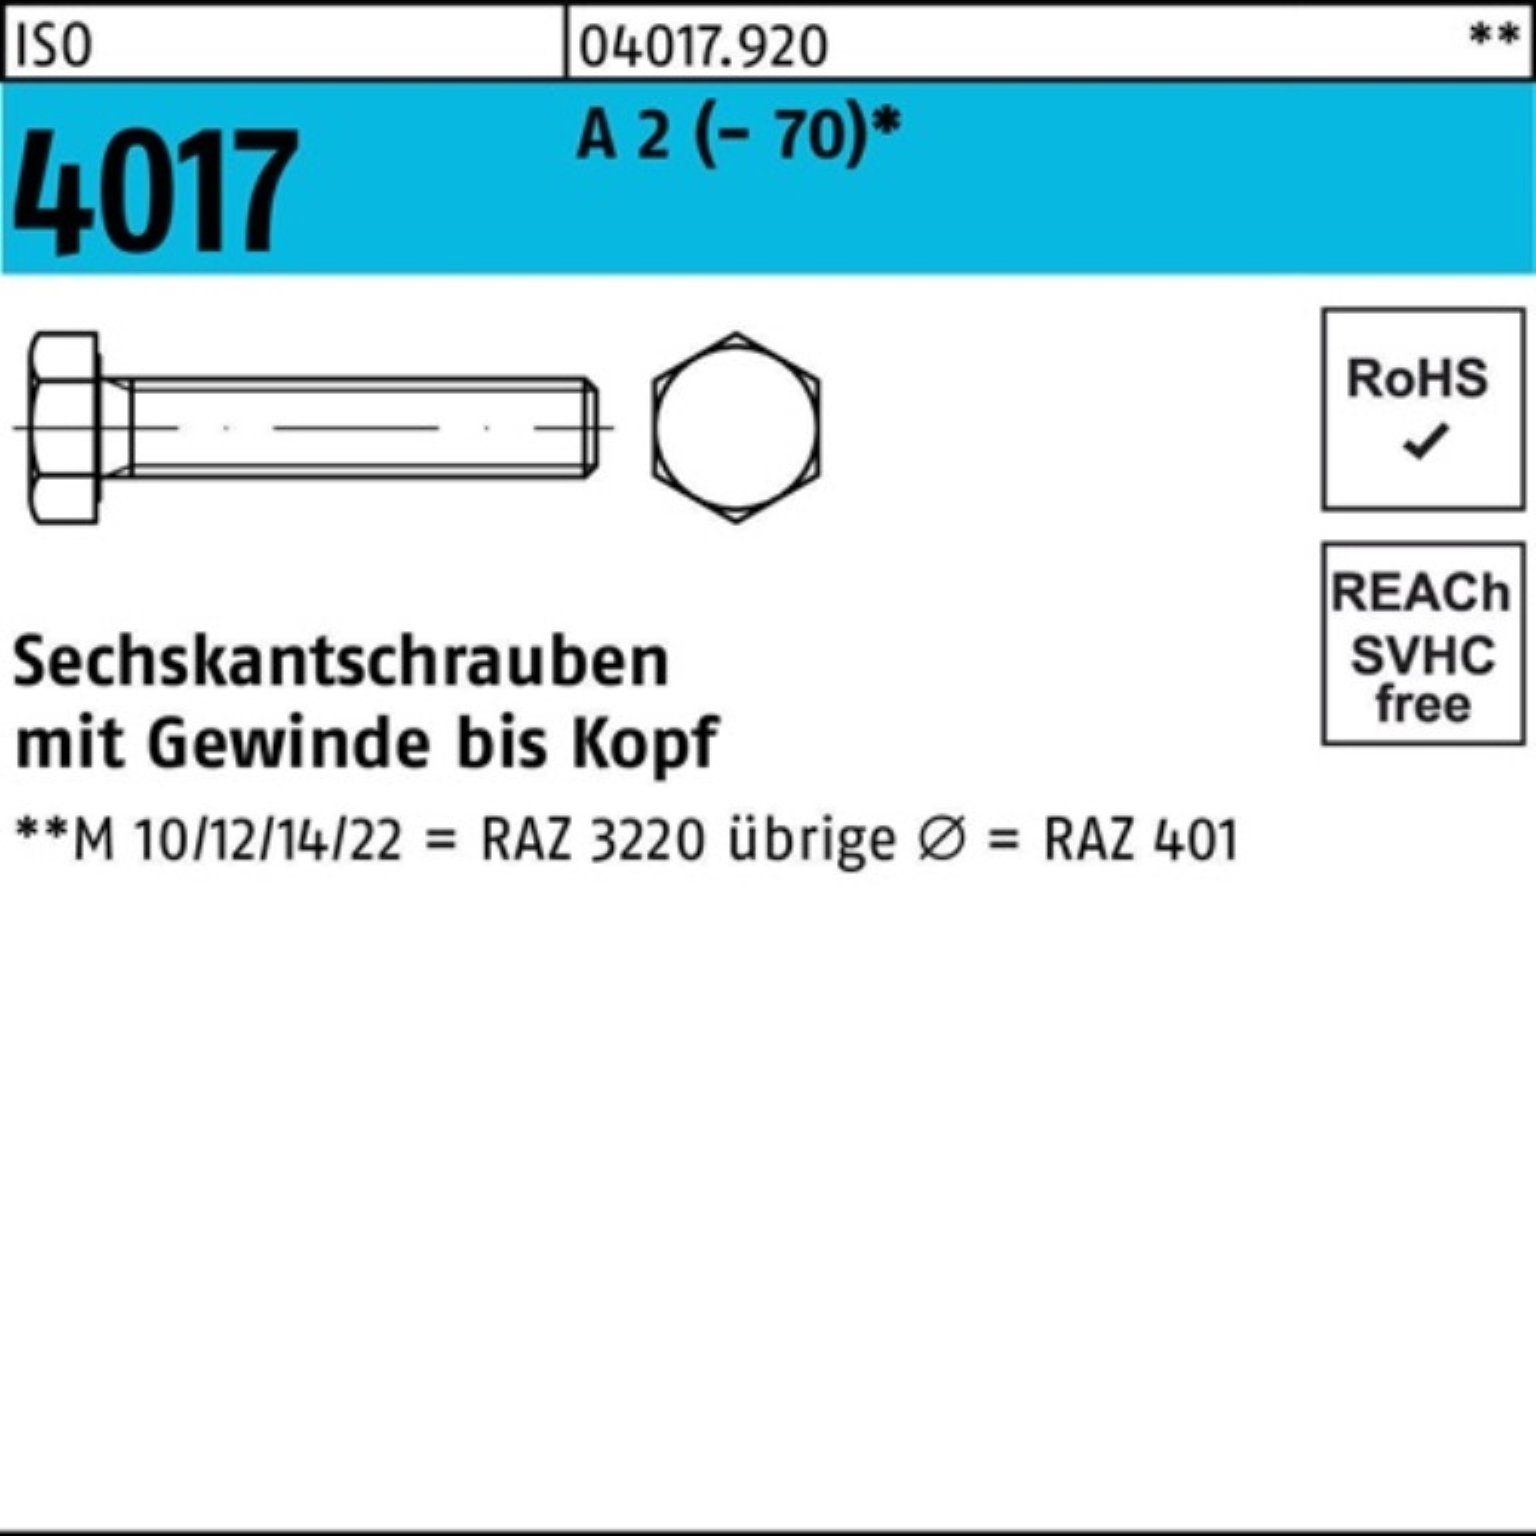 A M8x 50 Pack ISO Sechskantschraube Bufab 2 VG 4017 Sechskantschraube (70) Stück 100er 190